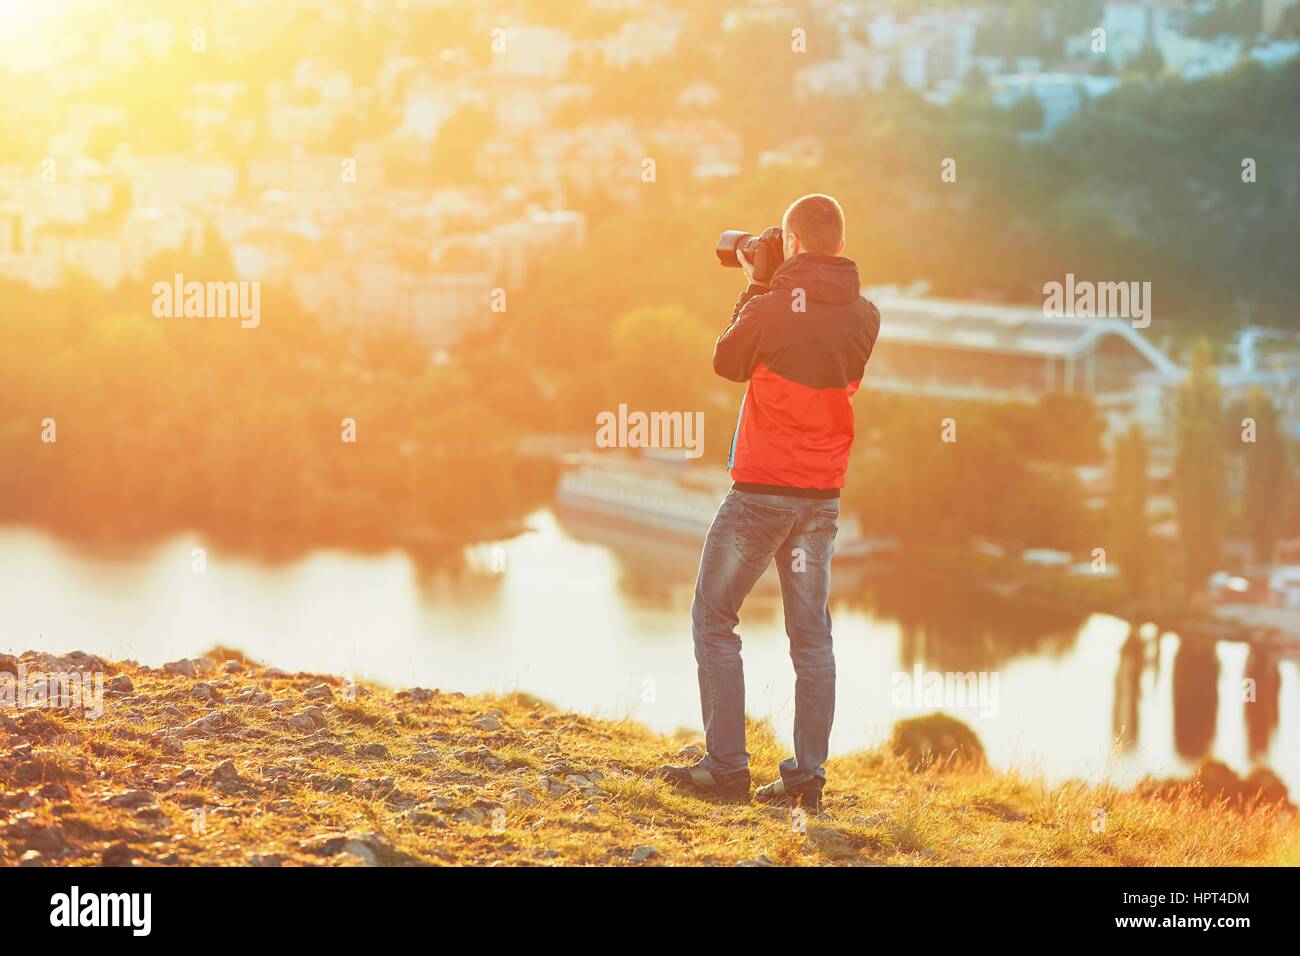 Morgen-Foto-shooting. Fotograf mit Spiegel Kamera nehmen Foto von der wunderbaren Sonnenaufgang. Stockfoto